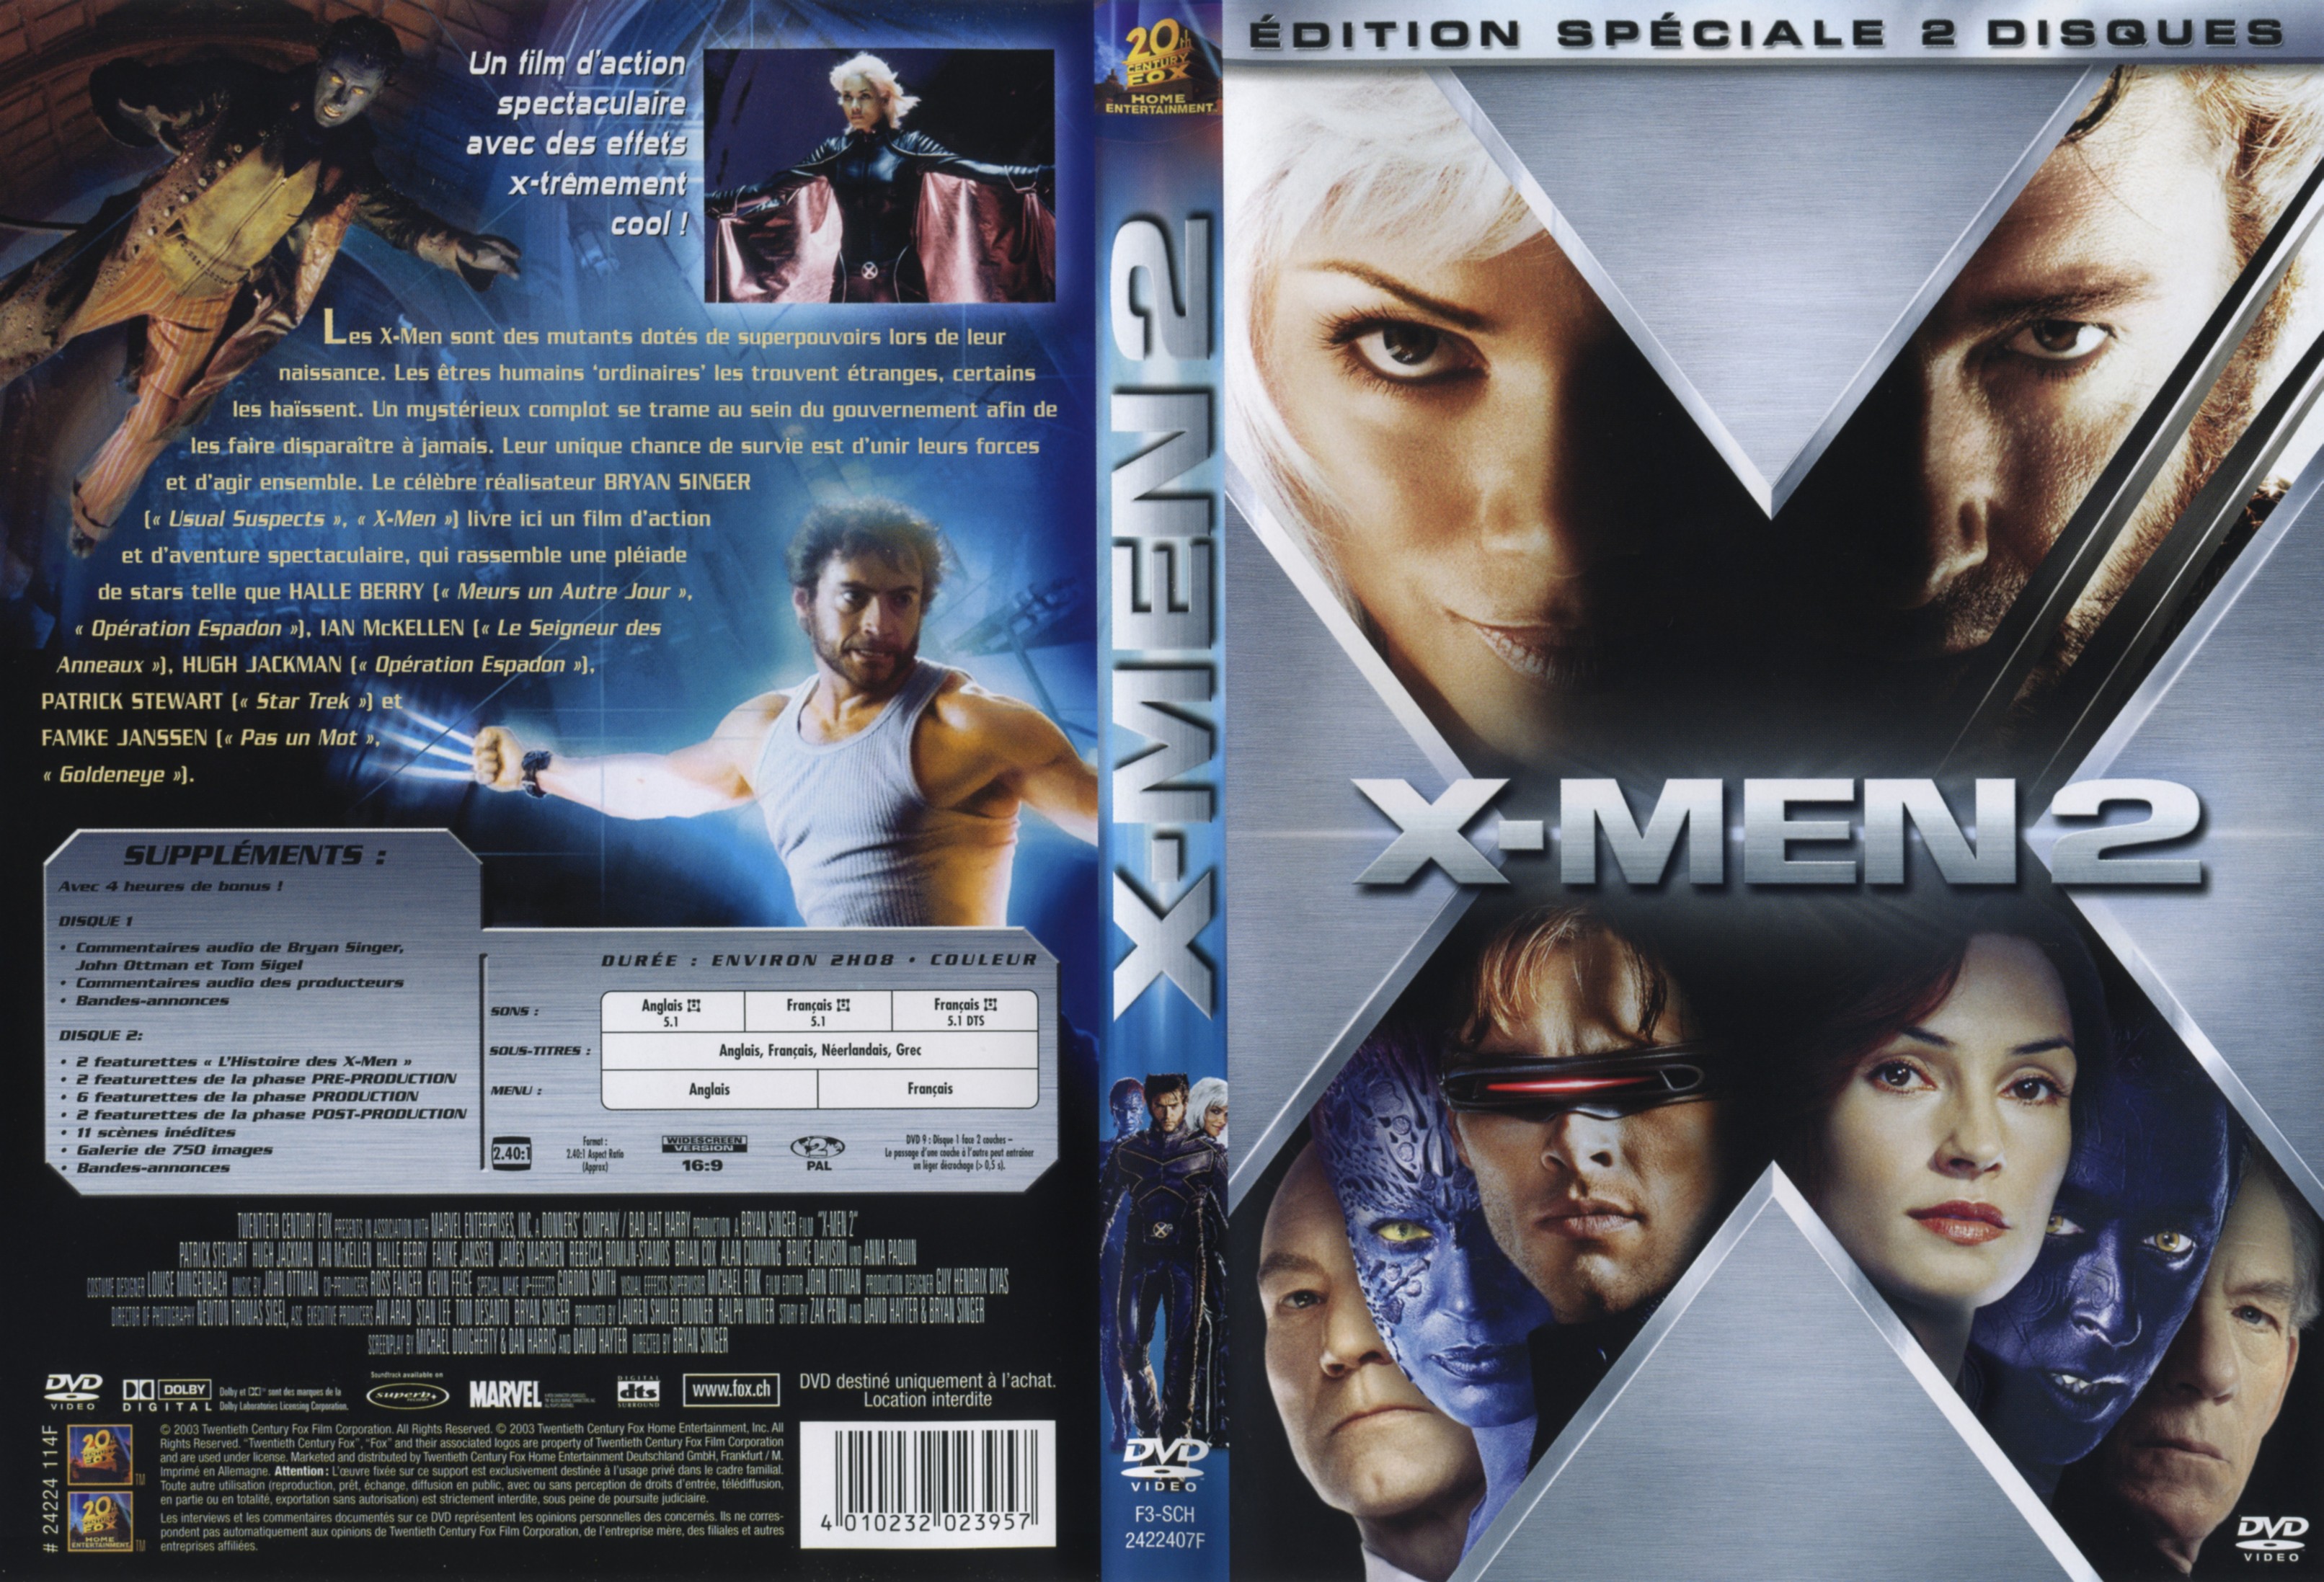 Jaquette DVD X-men 2 v3